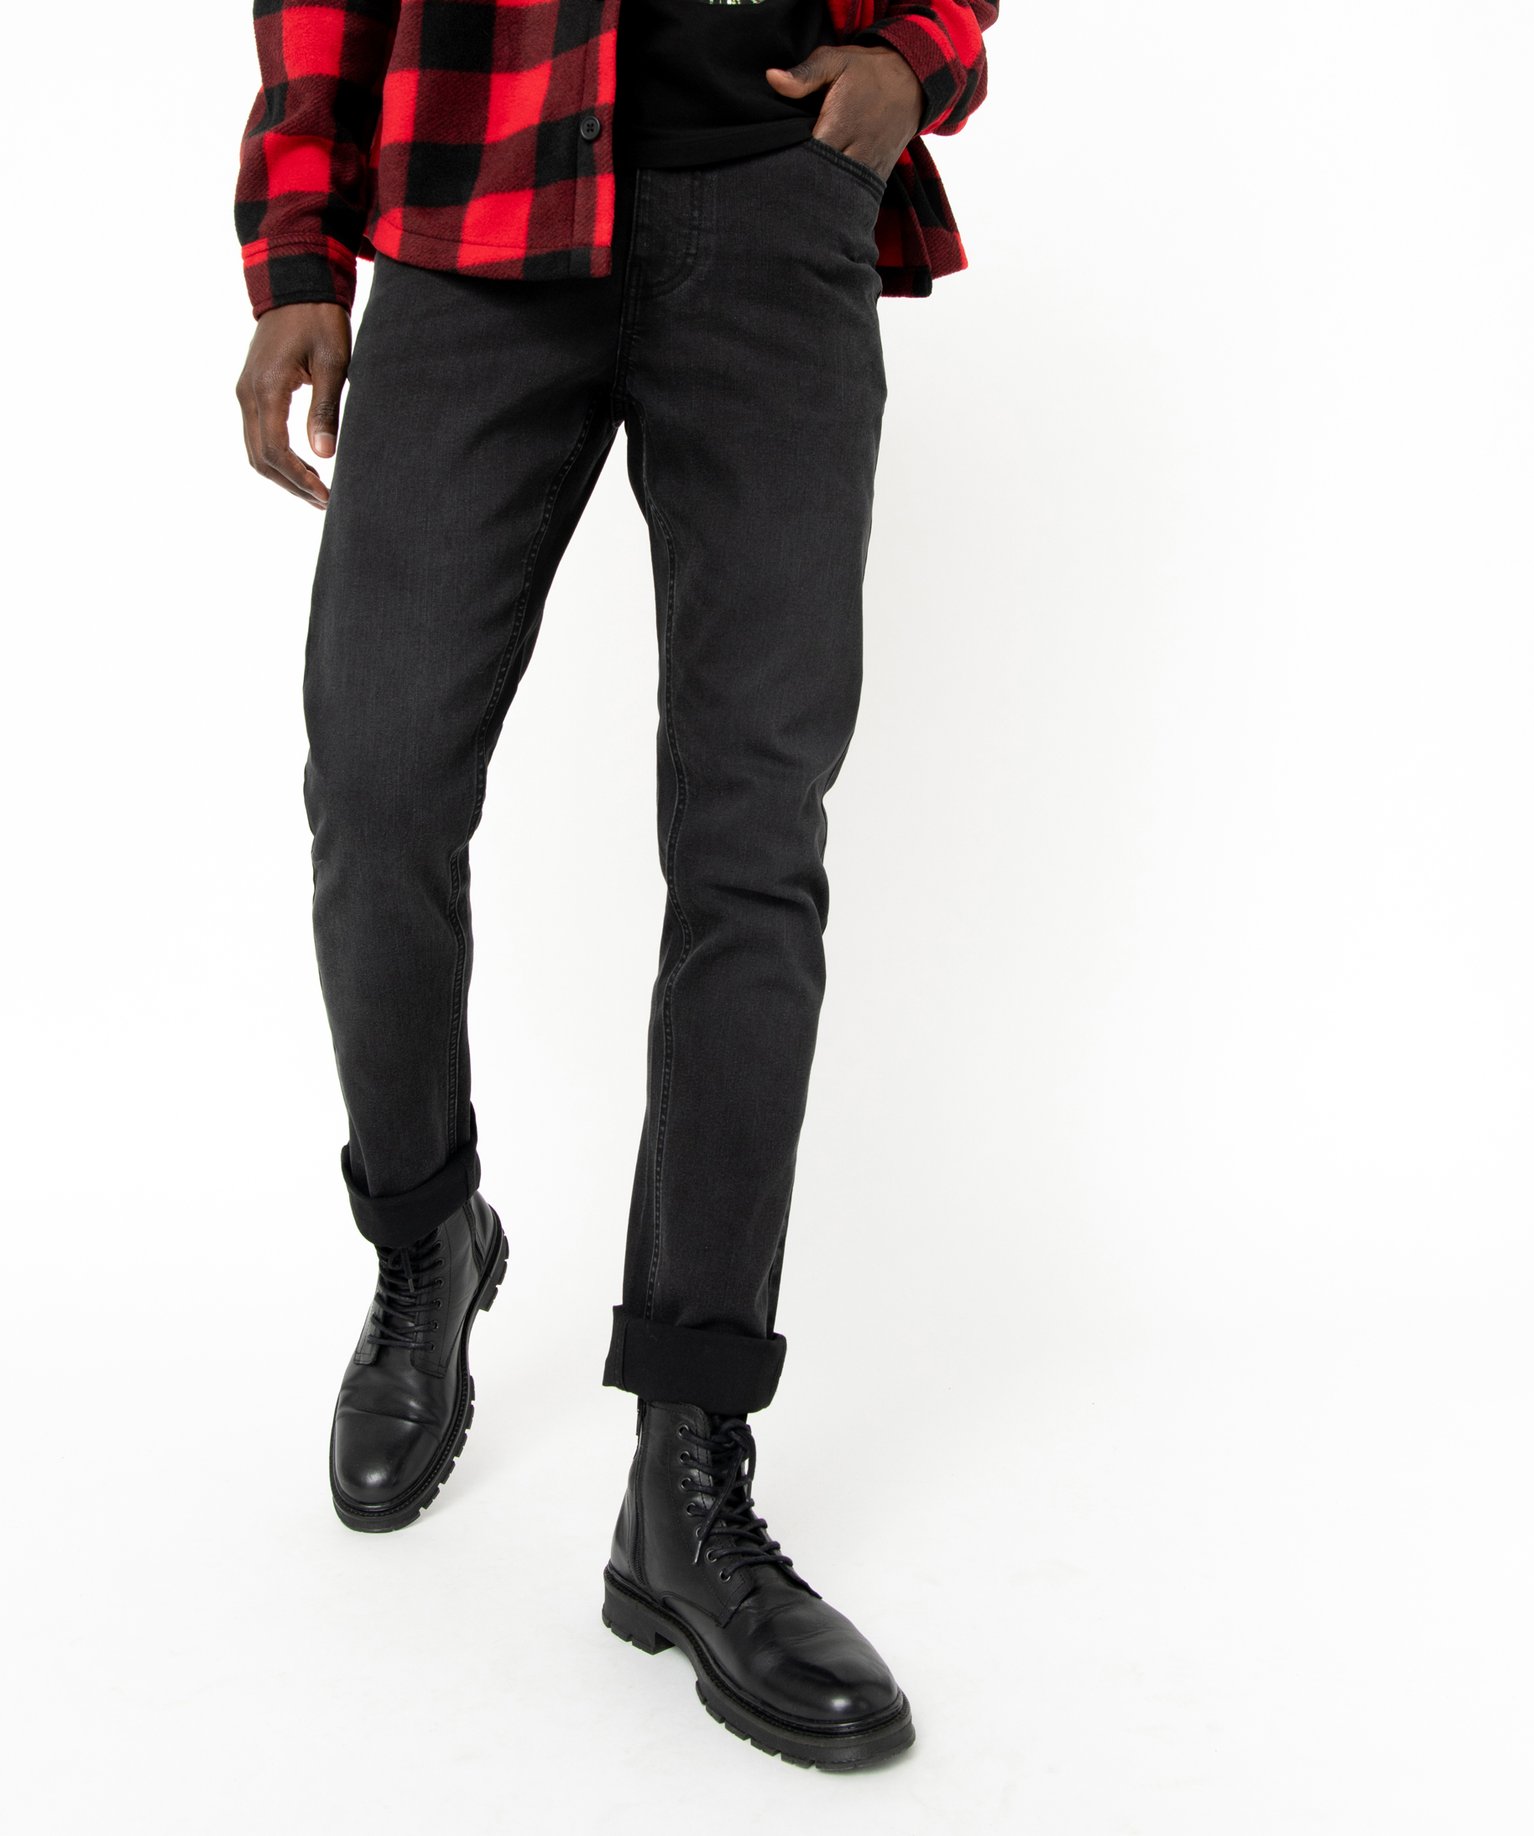 jean ecoresponsable coupe slim homme noir jeans slim